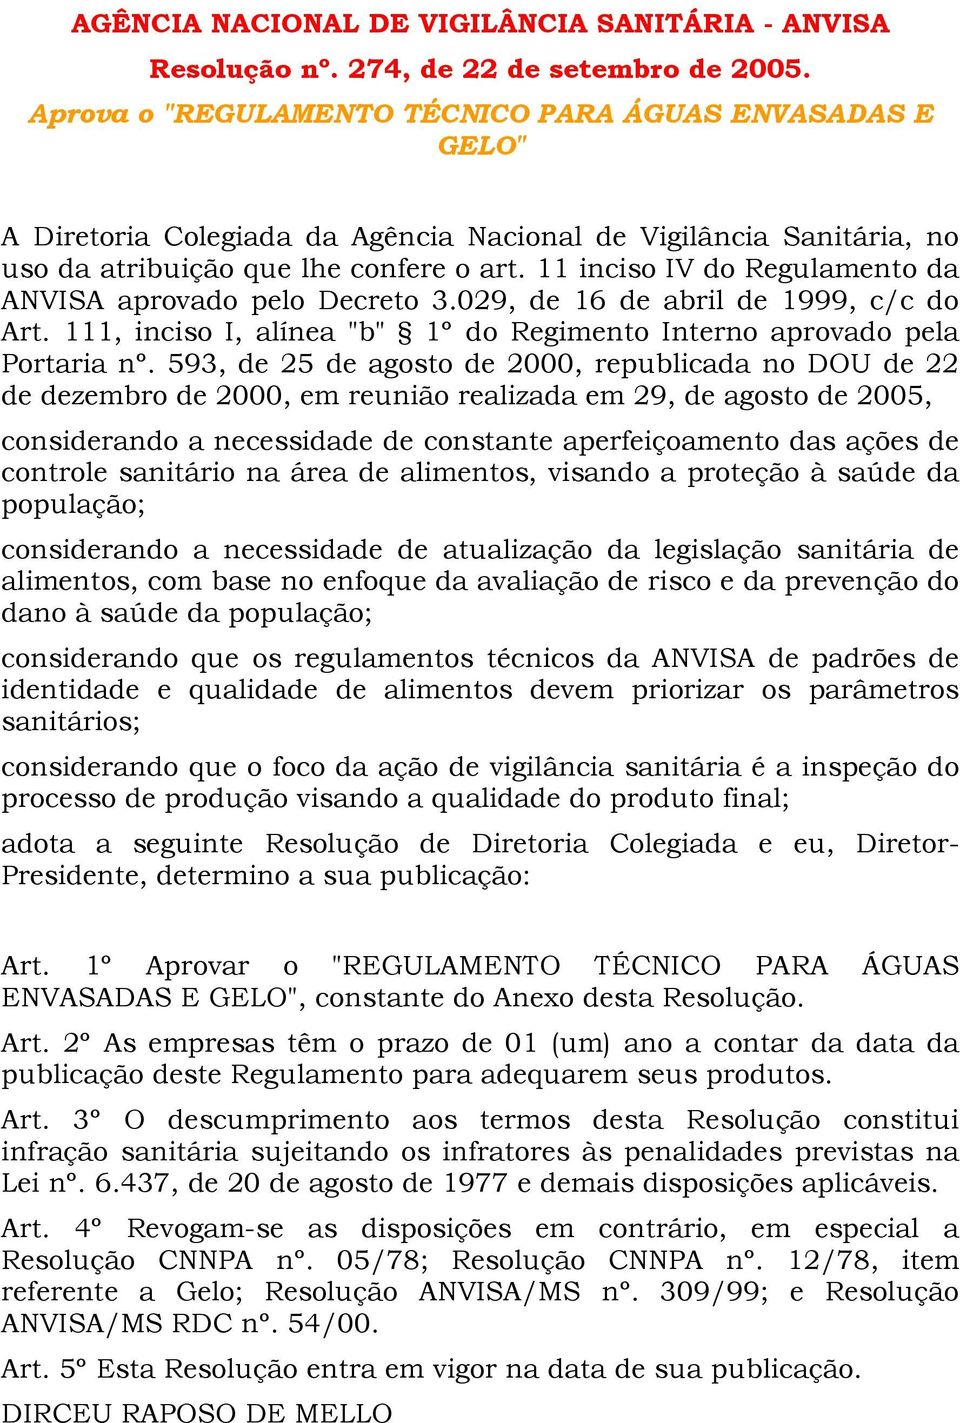 11 inciso IV do Regulamento da ANVISA aprovado pelo Decreto 3.029, de 16 de abril de 1999, c/c do Art. 111, inciso I, alínea "b" 1º do Regimento Interno aprovado pela Portaria nº.